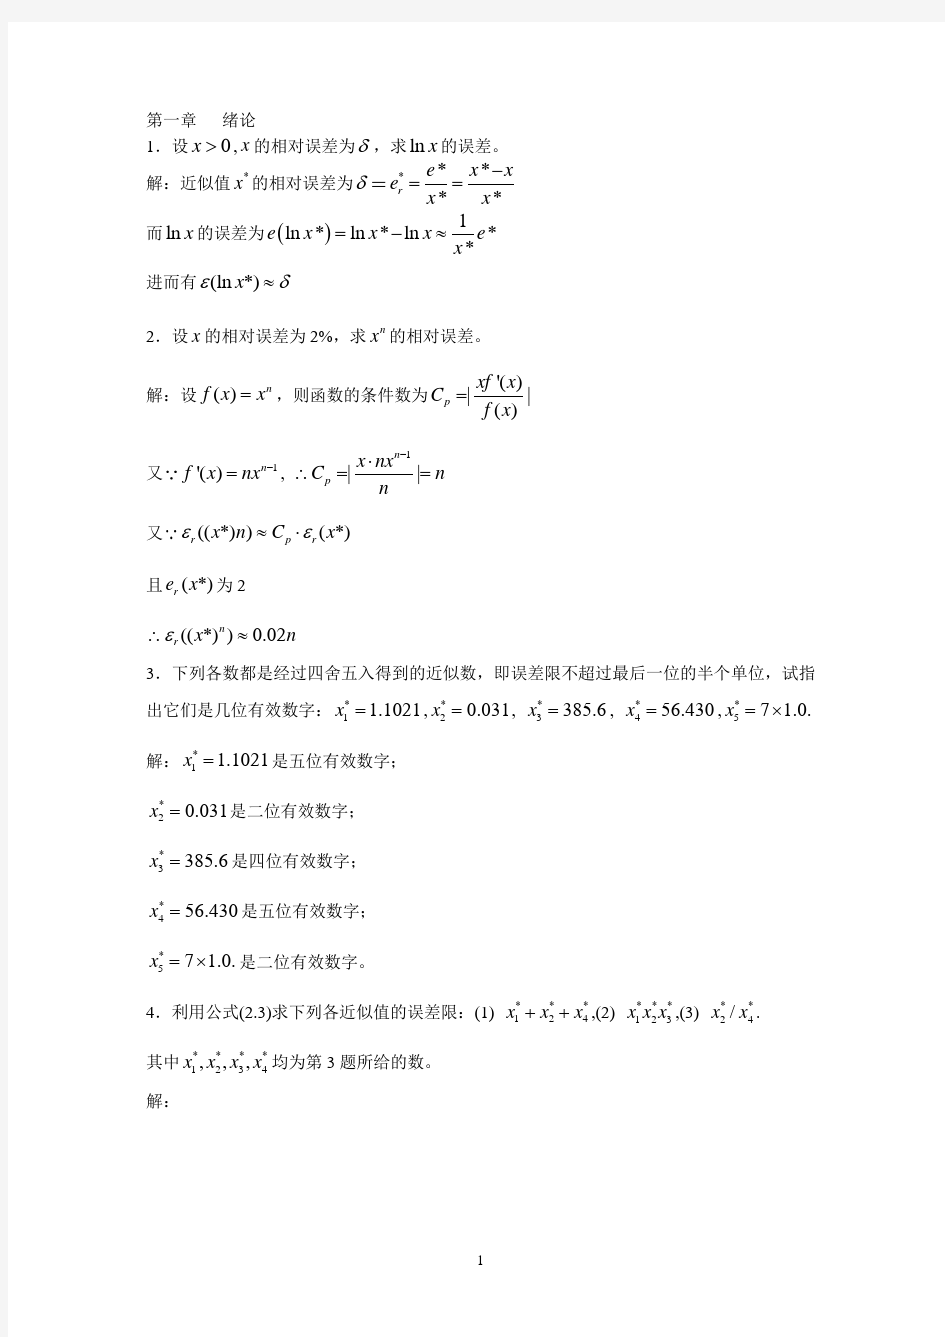 数值分析第五版_李庆扬_王能超_易大义主编课后习题答案